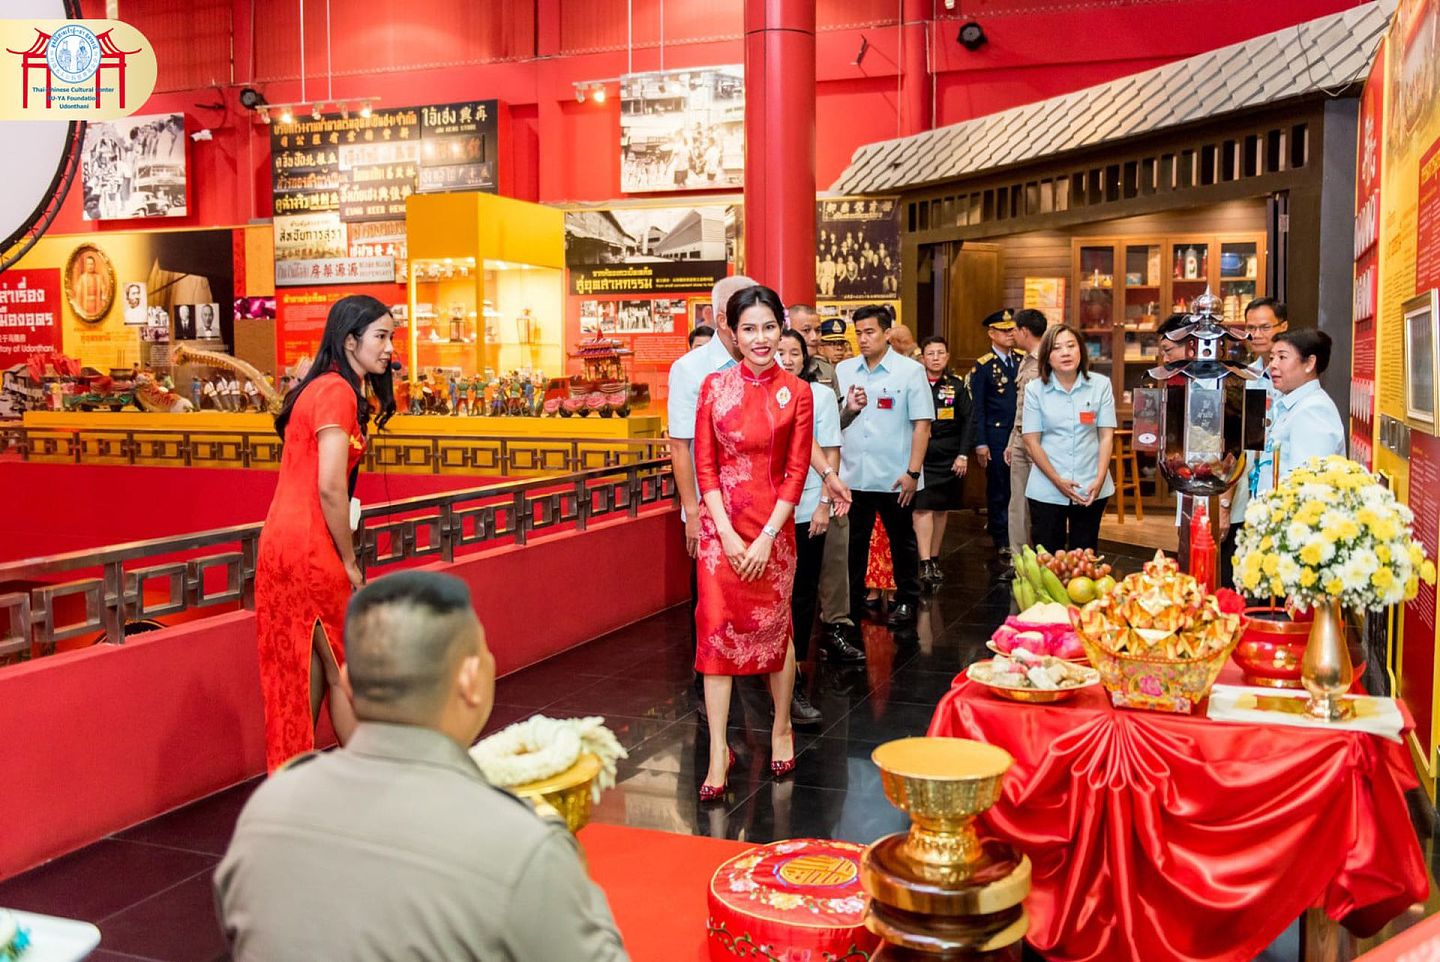 中国文化中心展厅面积288平方米，可举行中小型实物、书画、摄影等展览及其他活动。（Twitter@Royal World Thailand）